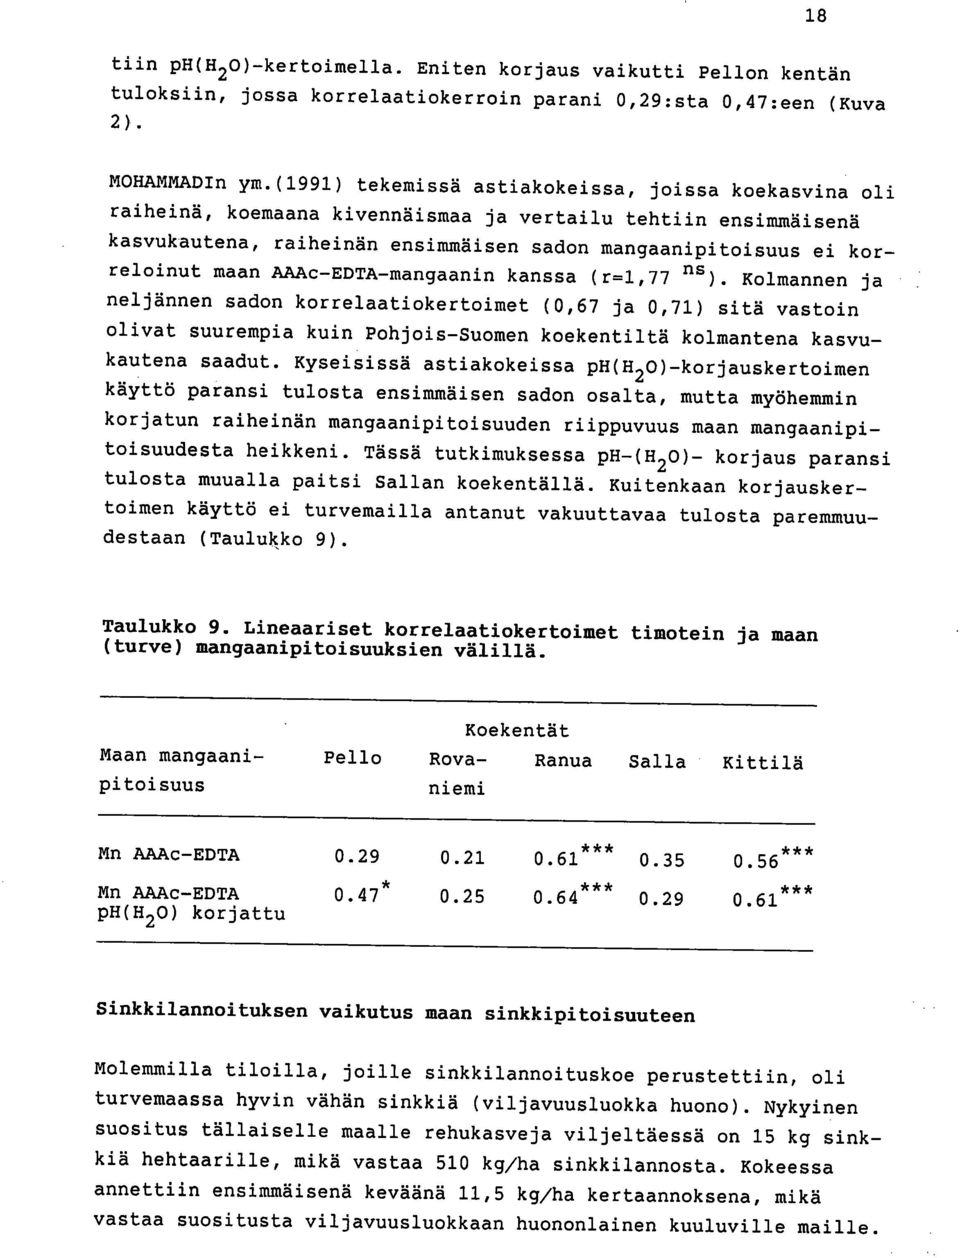 AAAc-EDTA-mangaanin kanssa (r=1,77 ns ). Kolmannen ja neljännen sadon korrelaatiokertoimet (0,67 ja 0,71) sitä vastoin olivat suurempia kuin Pohjois-Suomen koekentiltä kolmantena kasvukautena saadut.